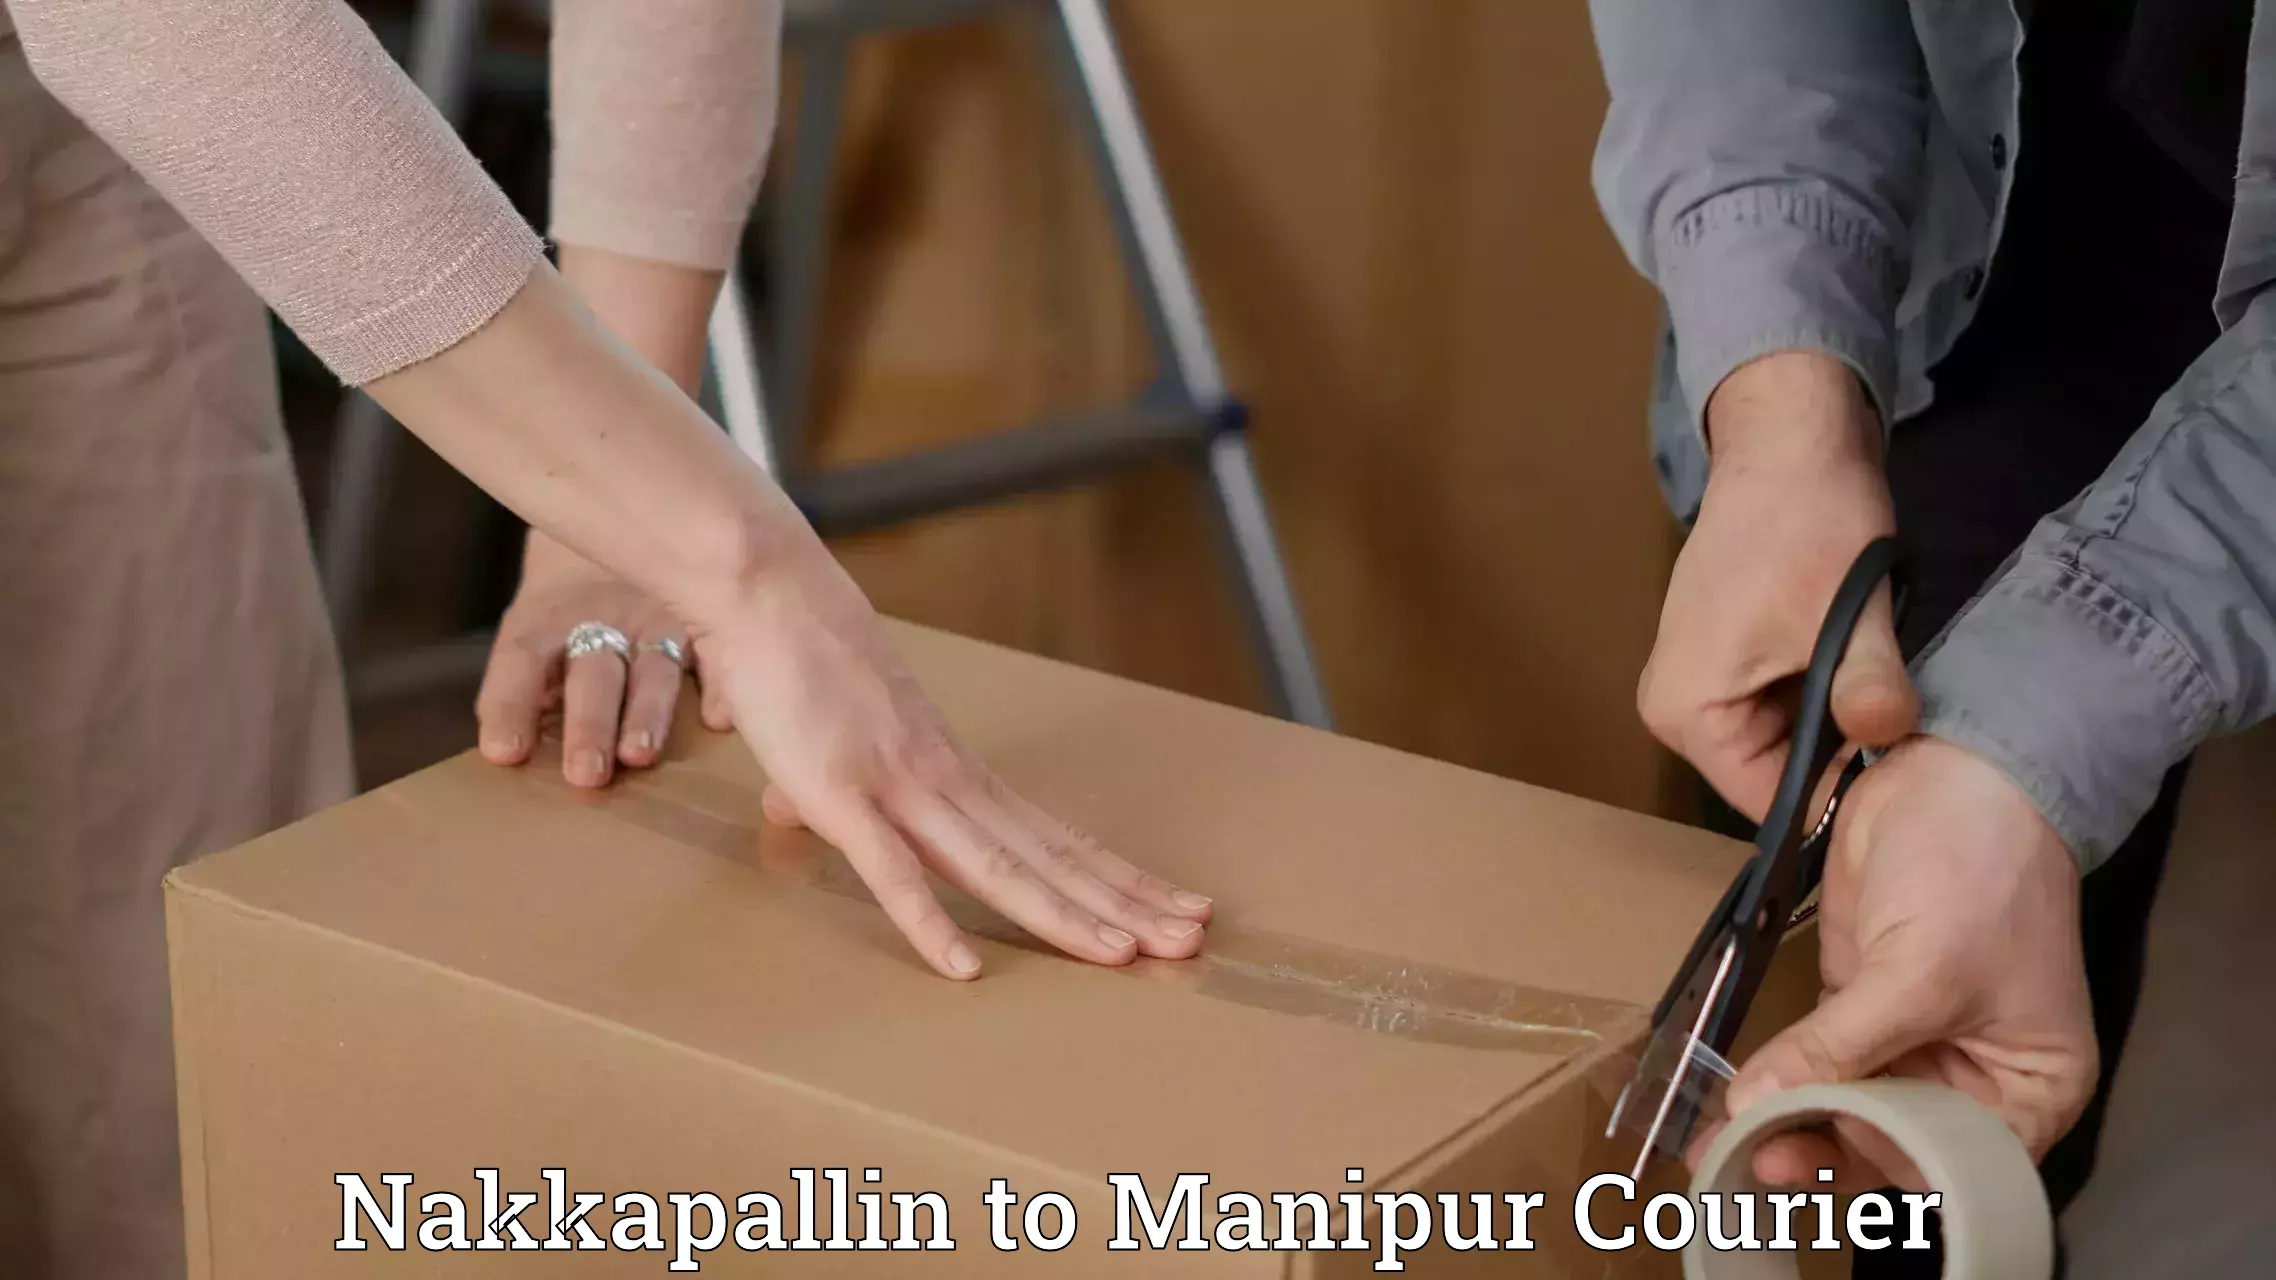 User-friendly courier app Nakkapallin to Manipur